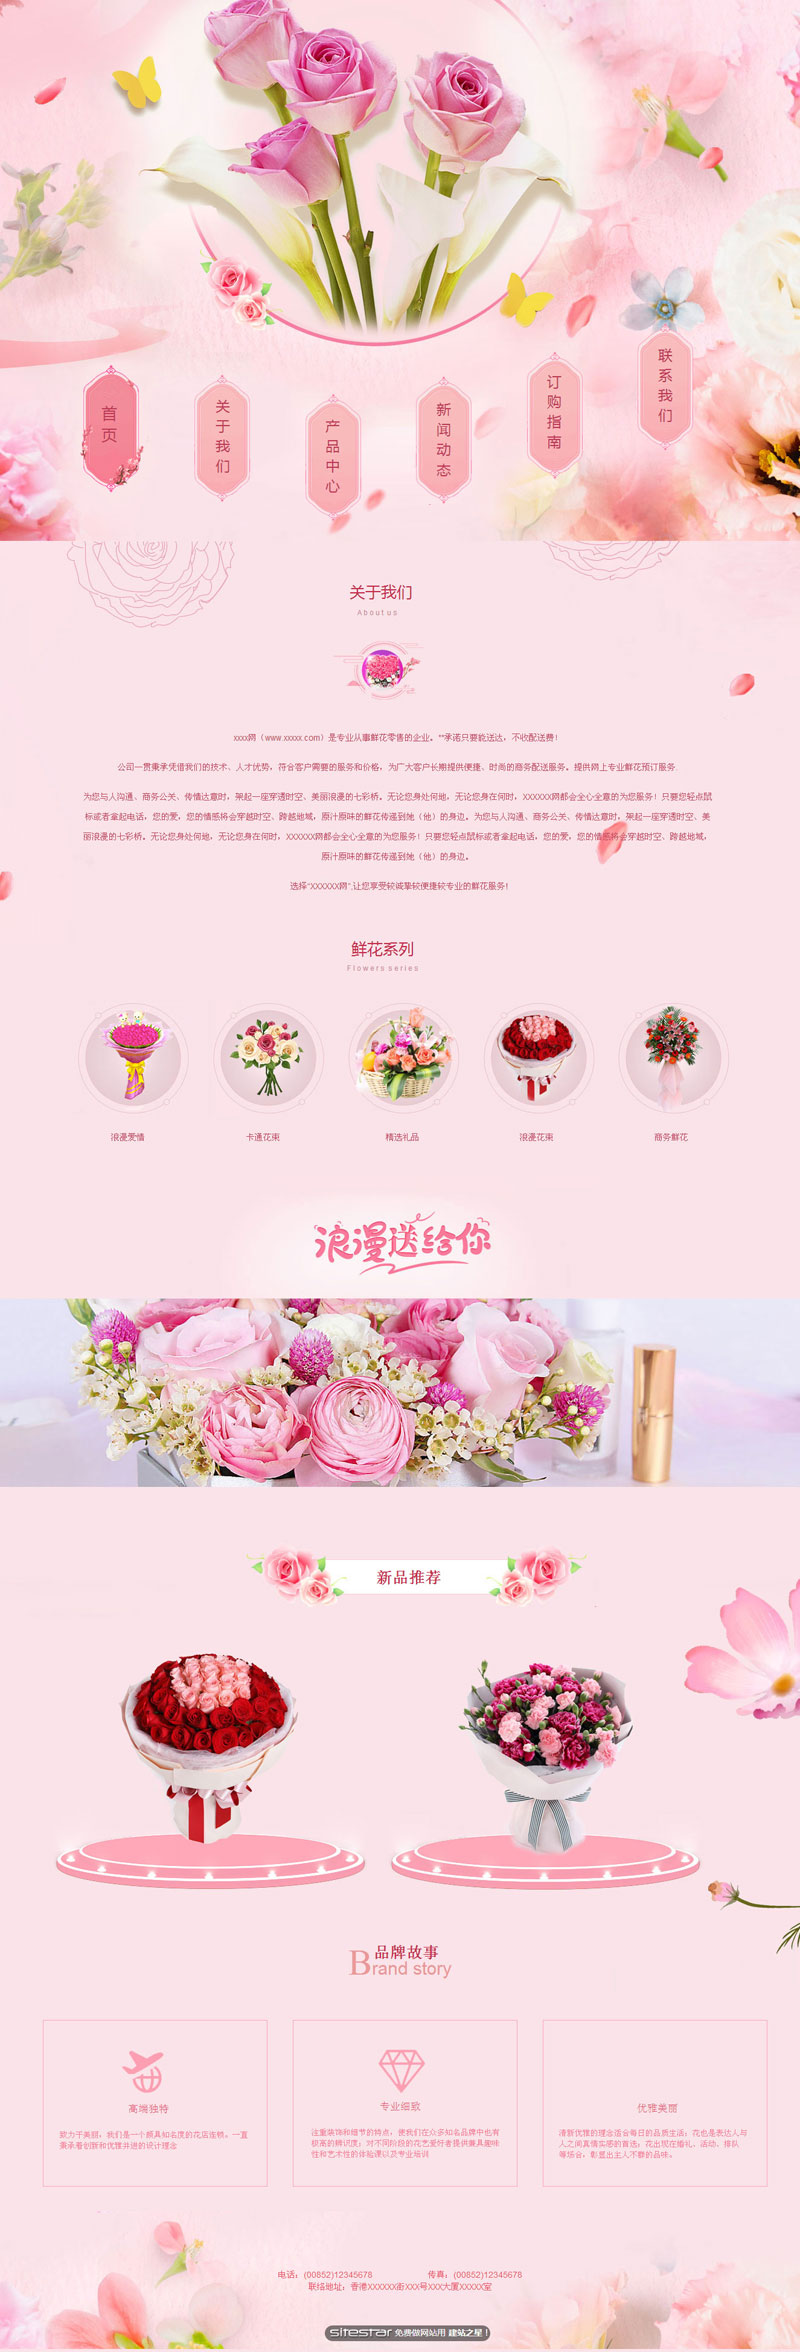 鲜花网站模板-flowers-1135516